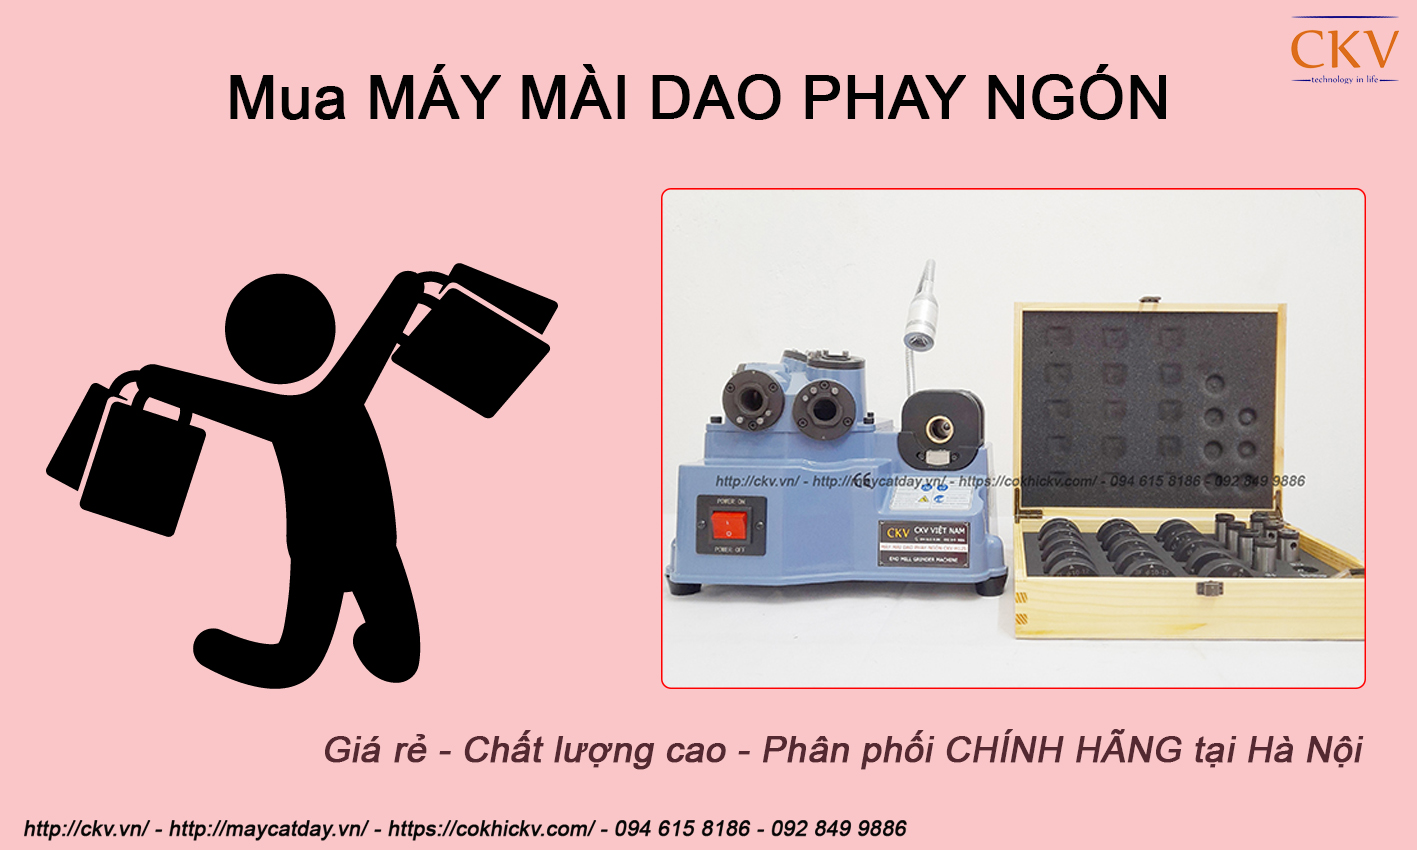 Mua máy mài dao phay ngón giá rẻ chính hãng tại Hà Nội